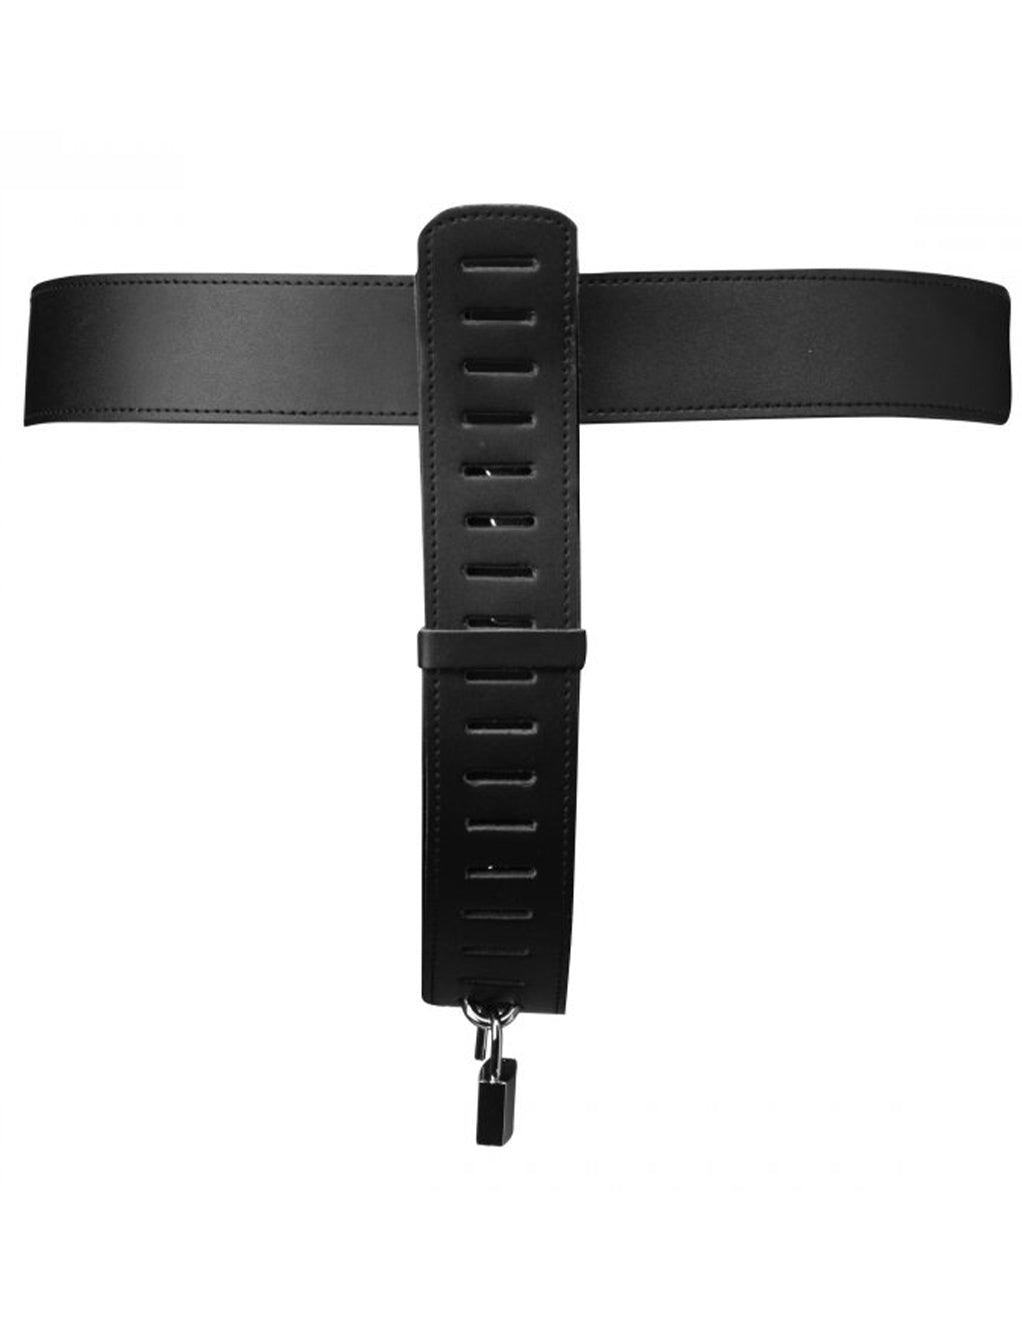 Strict Leather Adjustable Chastity Belt- Back